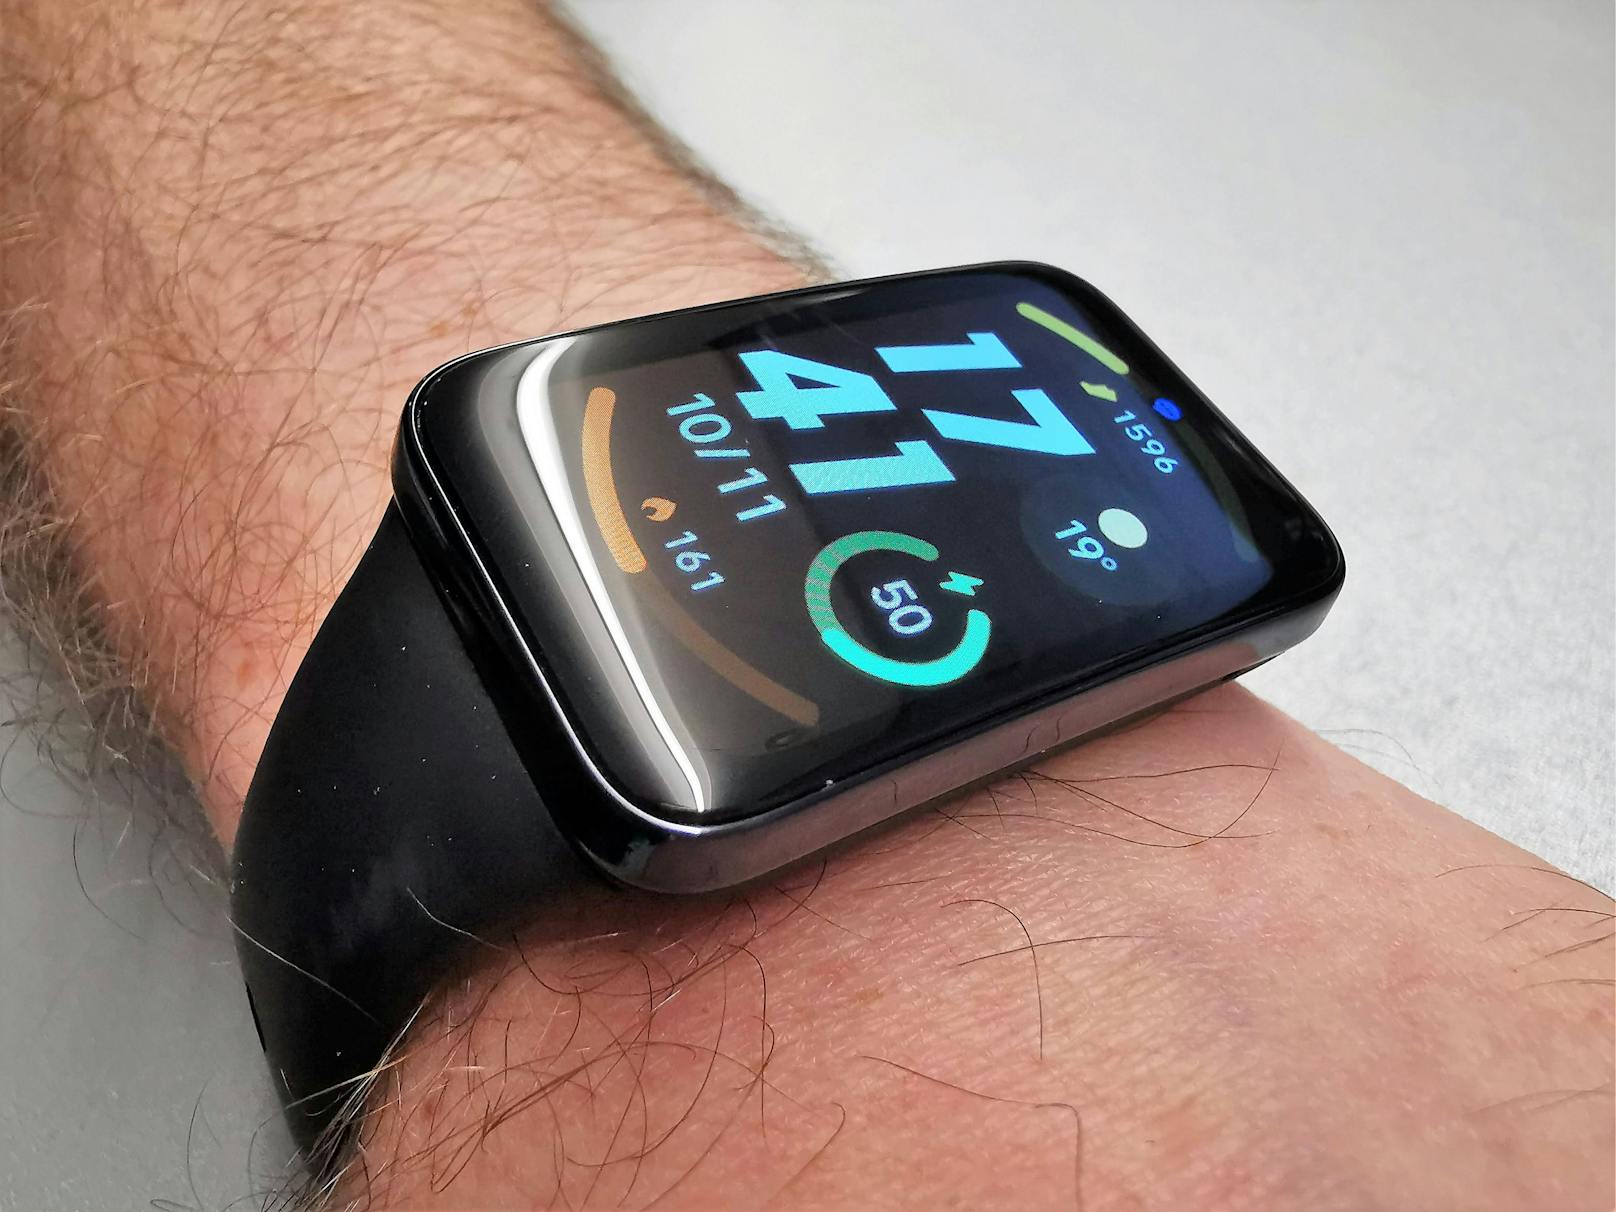 ... – das Display ist rechteckig und breiter als das Silikon-Armband der Uhr – verstärkt sich der Smartwatch-Eindruck noch weiter. Überraschend tief fällt da der Preis aus.&nbsp;